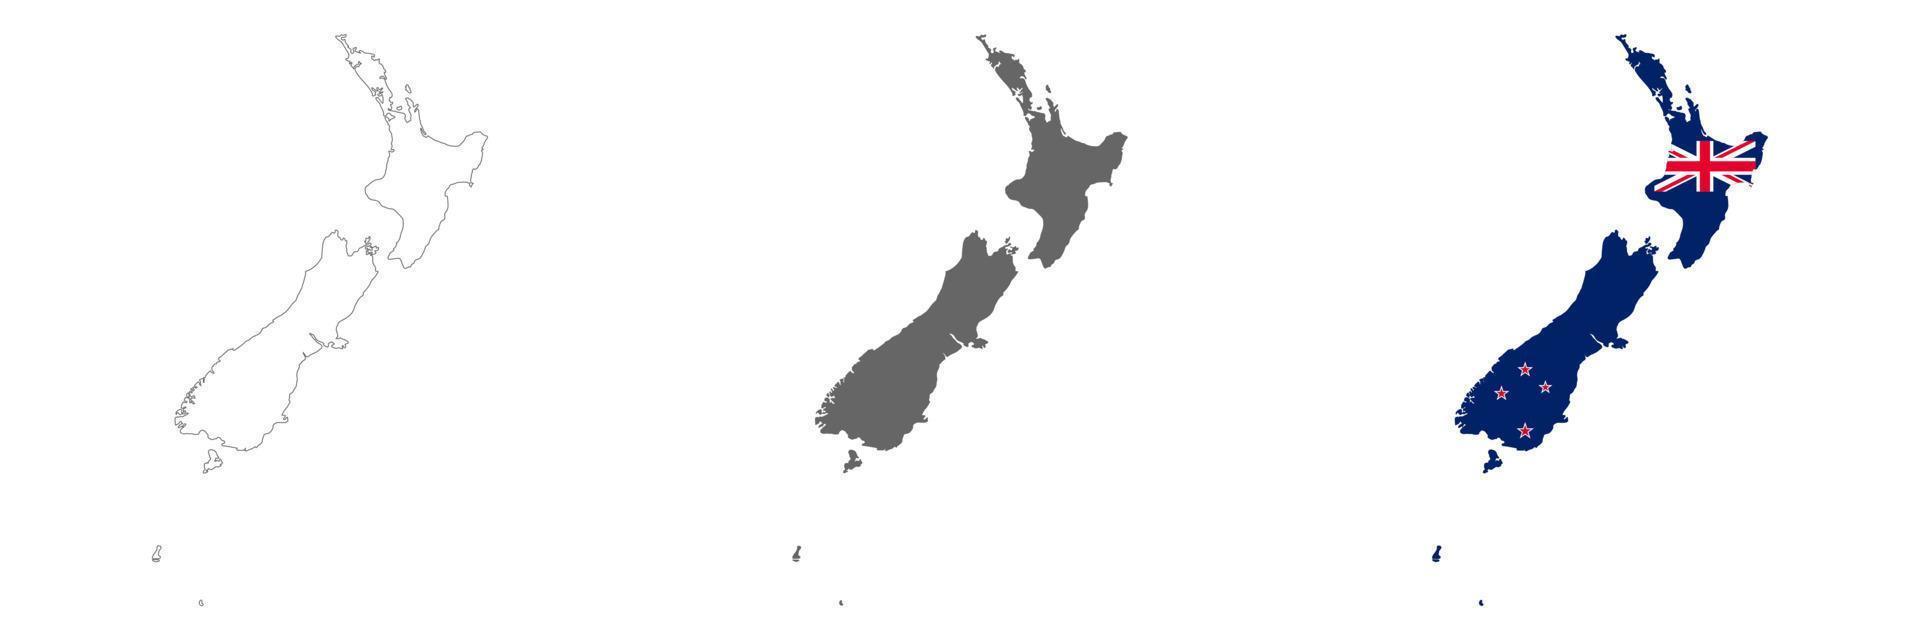 mapa altamente detalhado da nova zelândia com bordas isoladas no fundo vetor